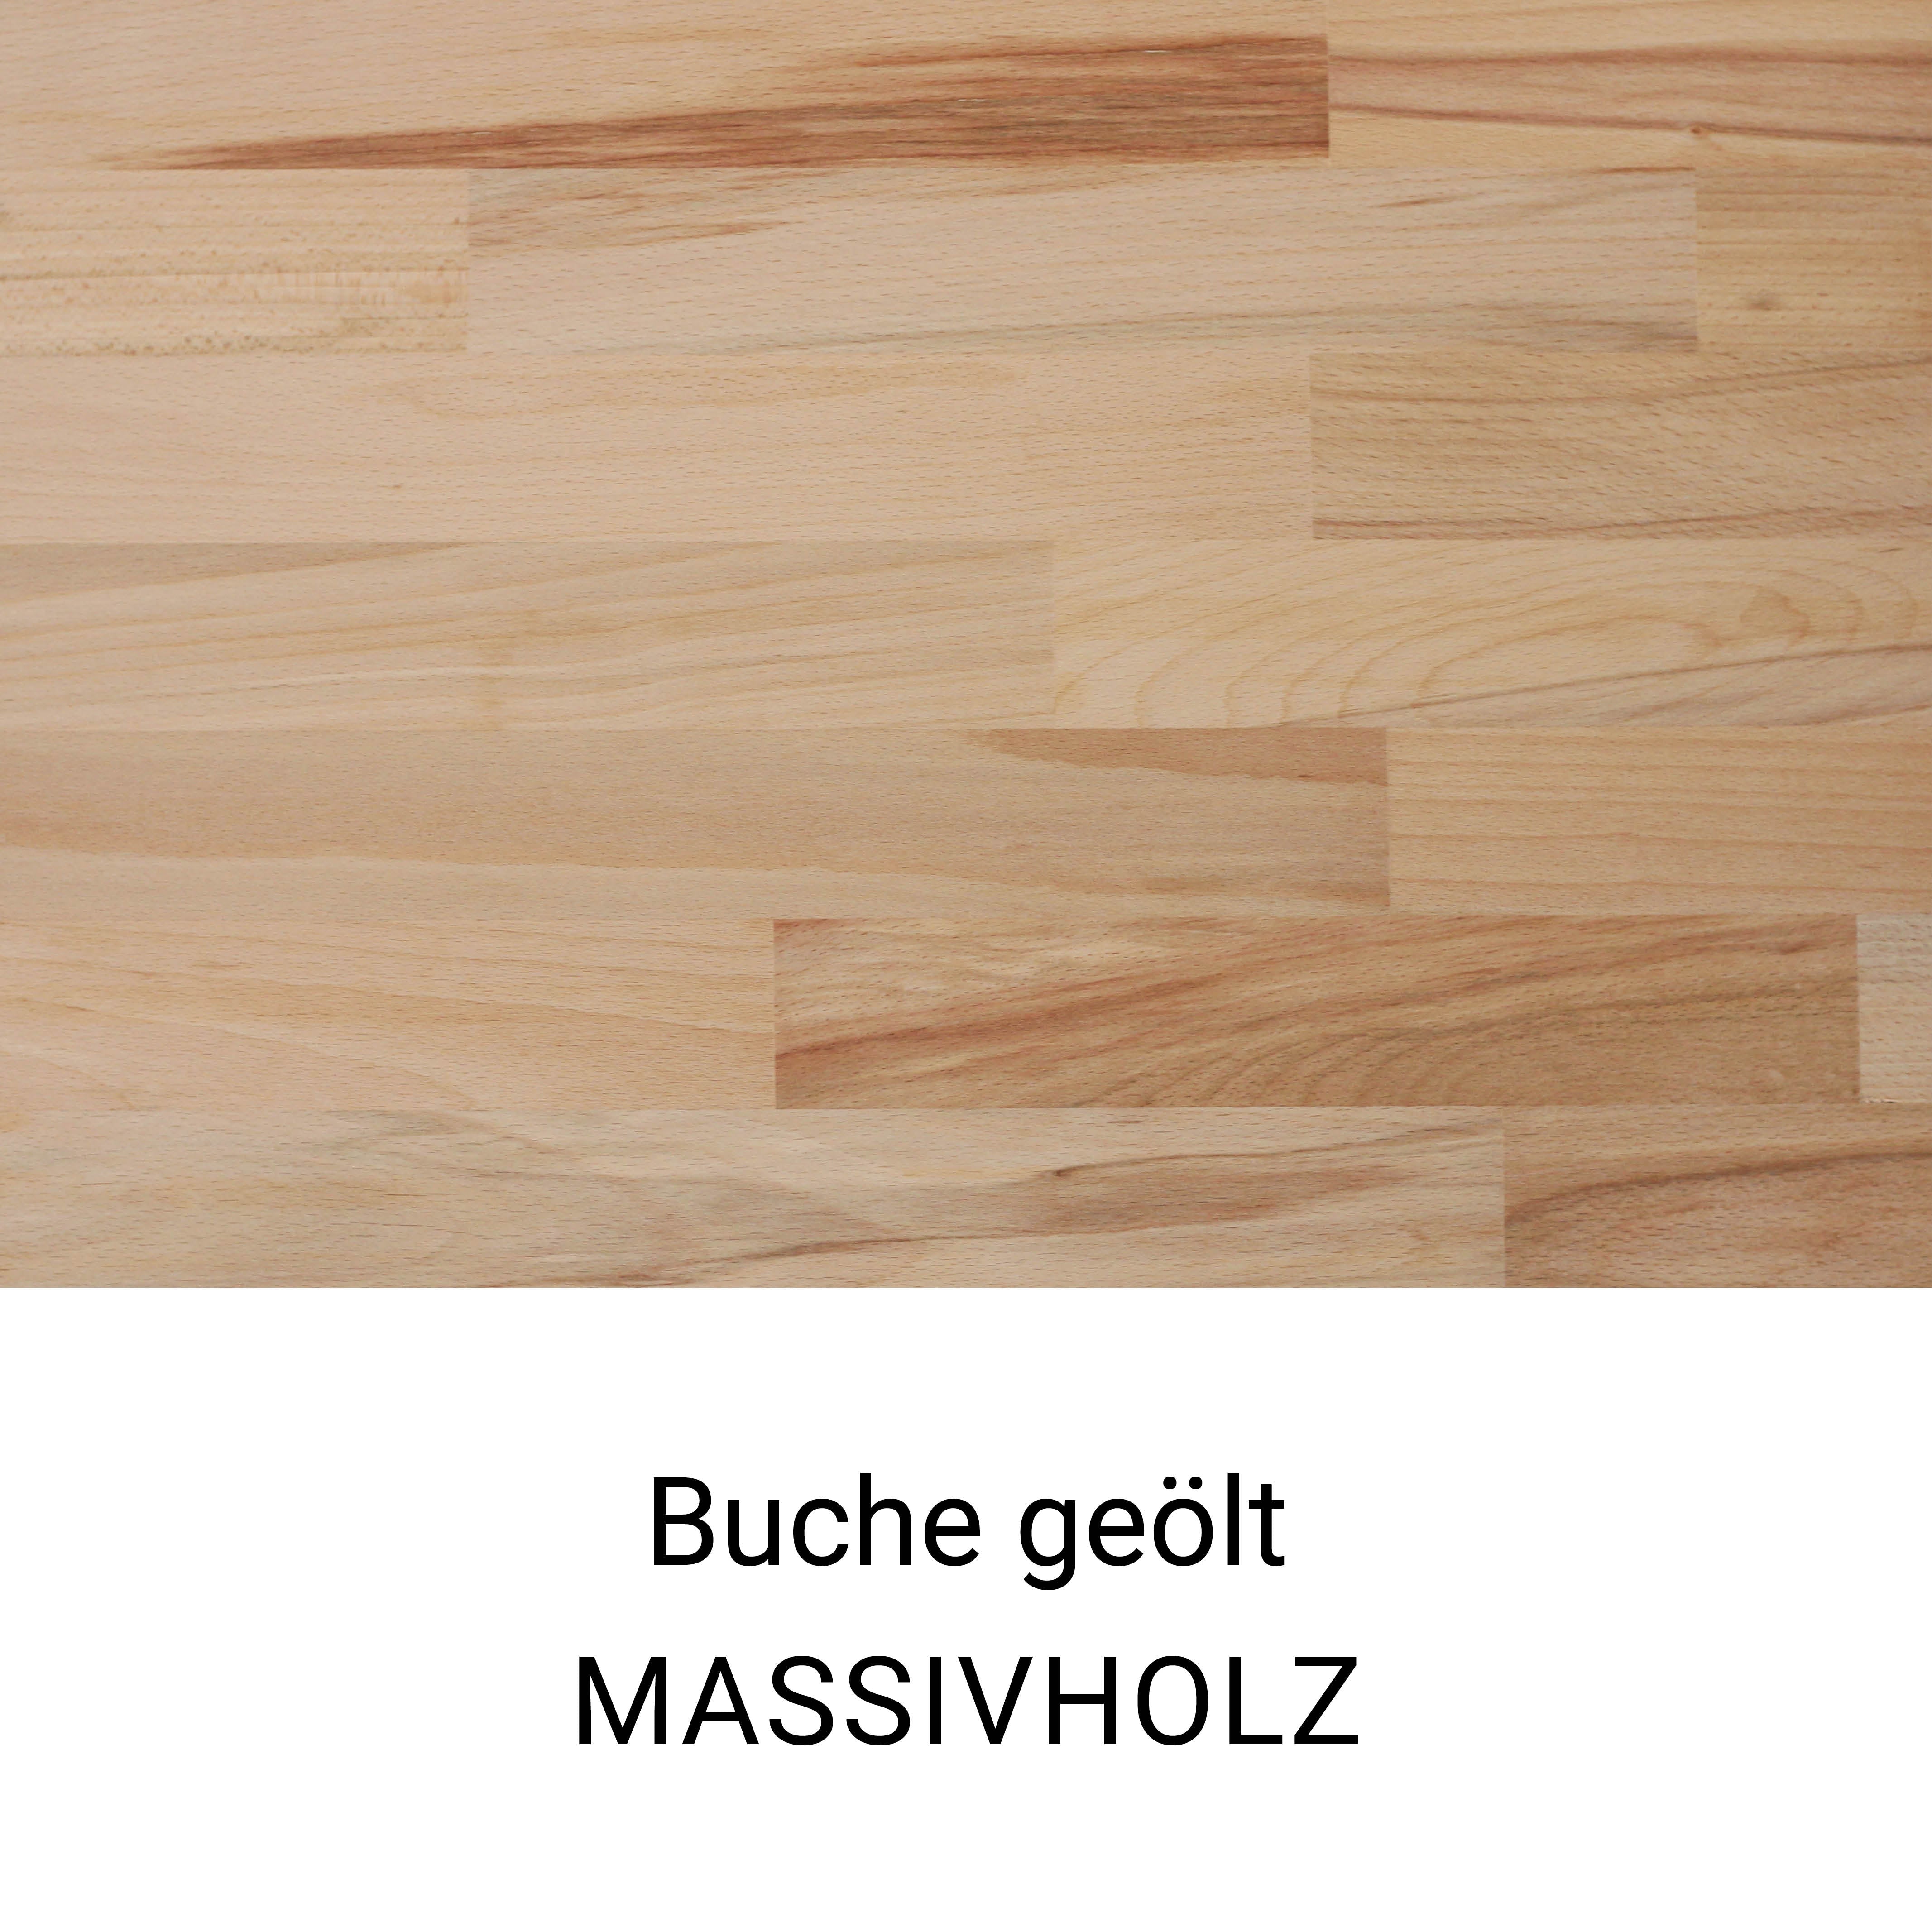 Echtholz-Muster einer Oberfläche aus massivem und geöltem Buchenholz